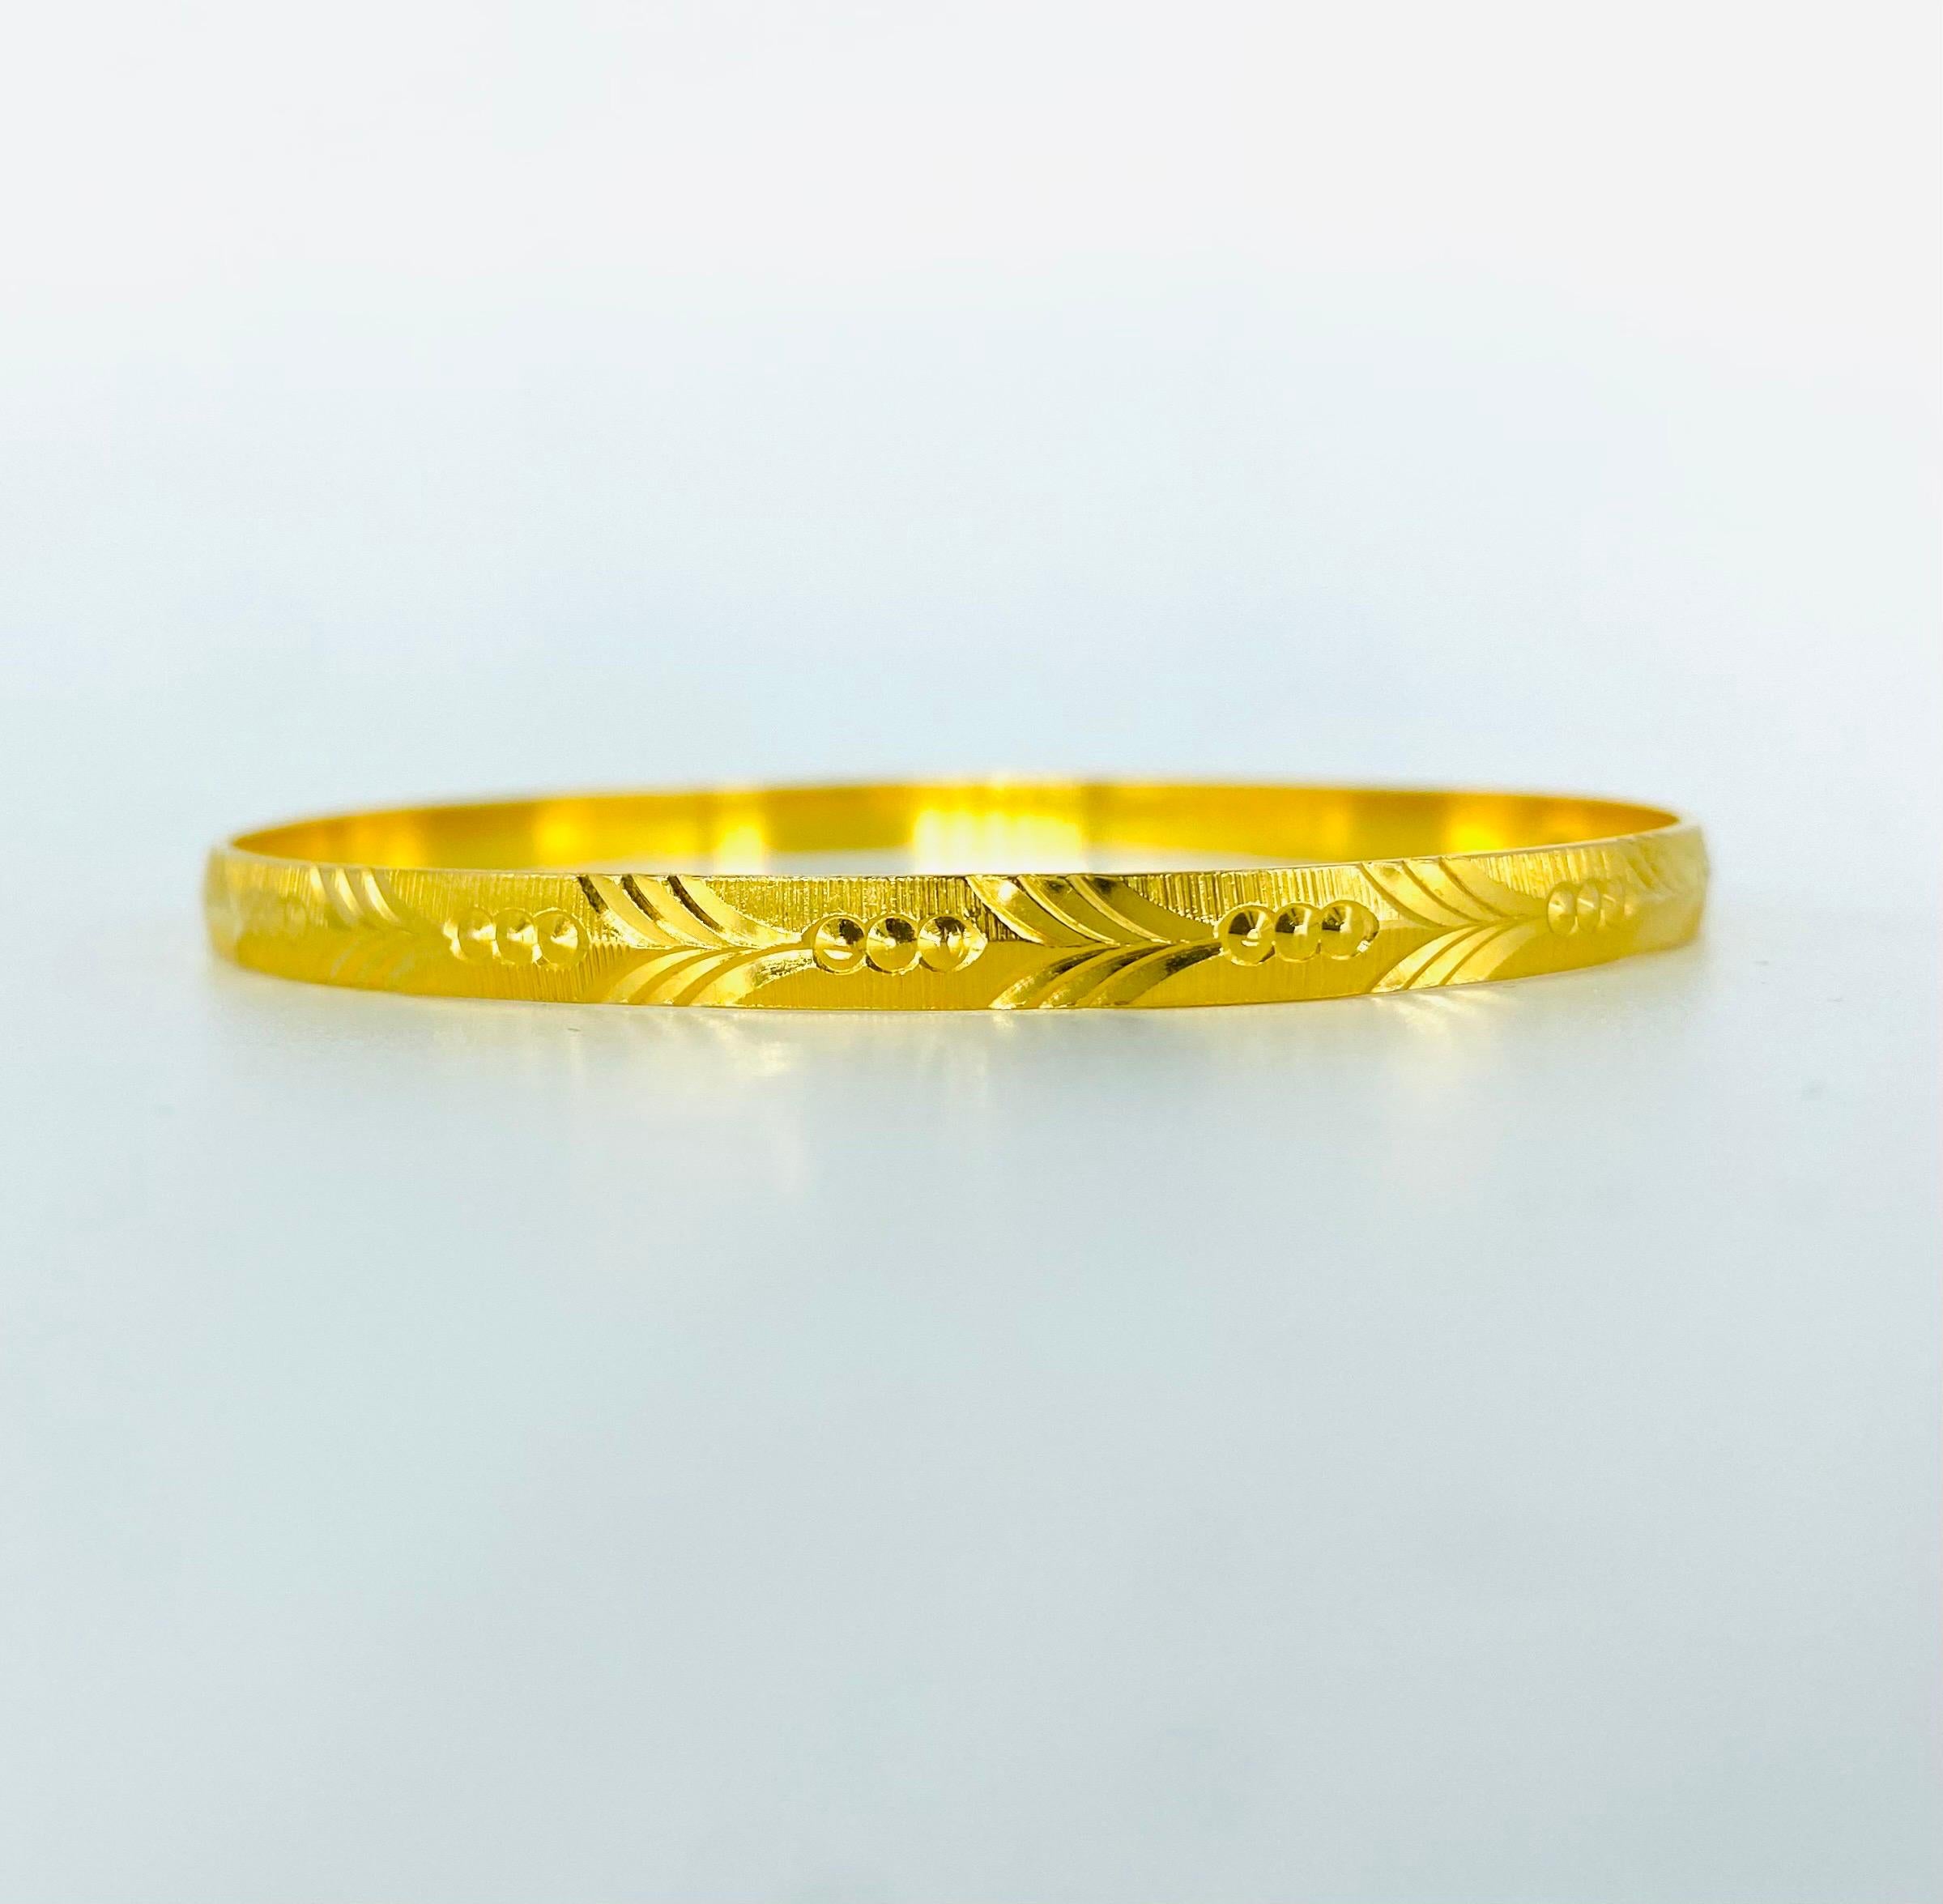 Vintage 22k Gold 4.5mm Diamond Cut Leaf Design Bangle. Le bracelet s'adapte à un poignet jusqu'à 6 pouces. Il s'agit de bracelets en or massif 22k très rares et uniques. Le bracelet pèse 12,9 grammes.